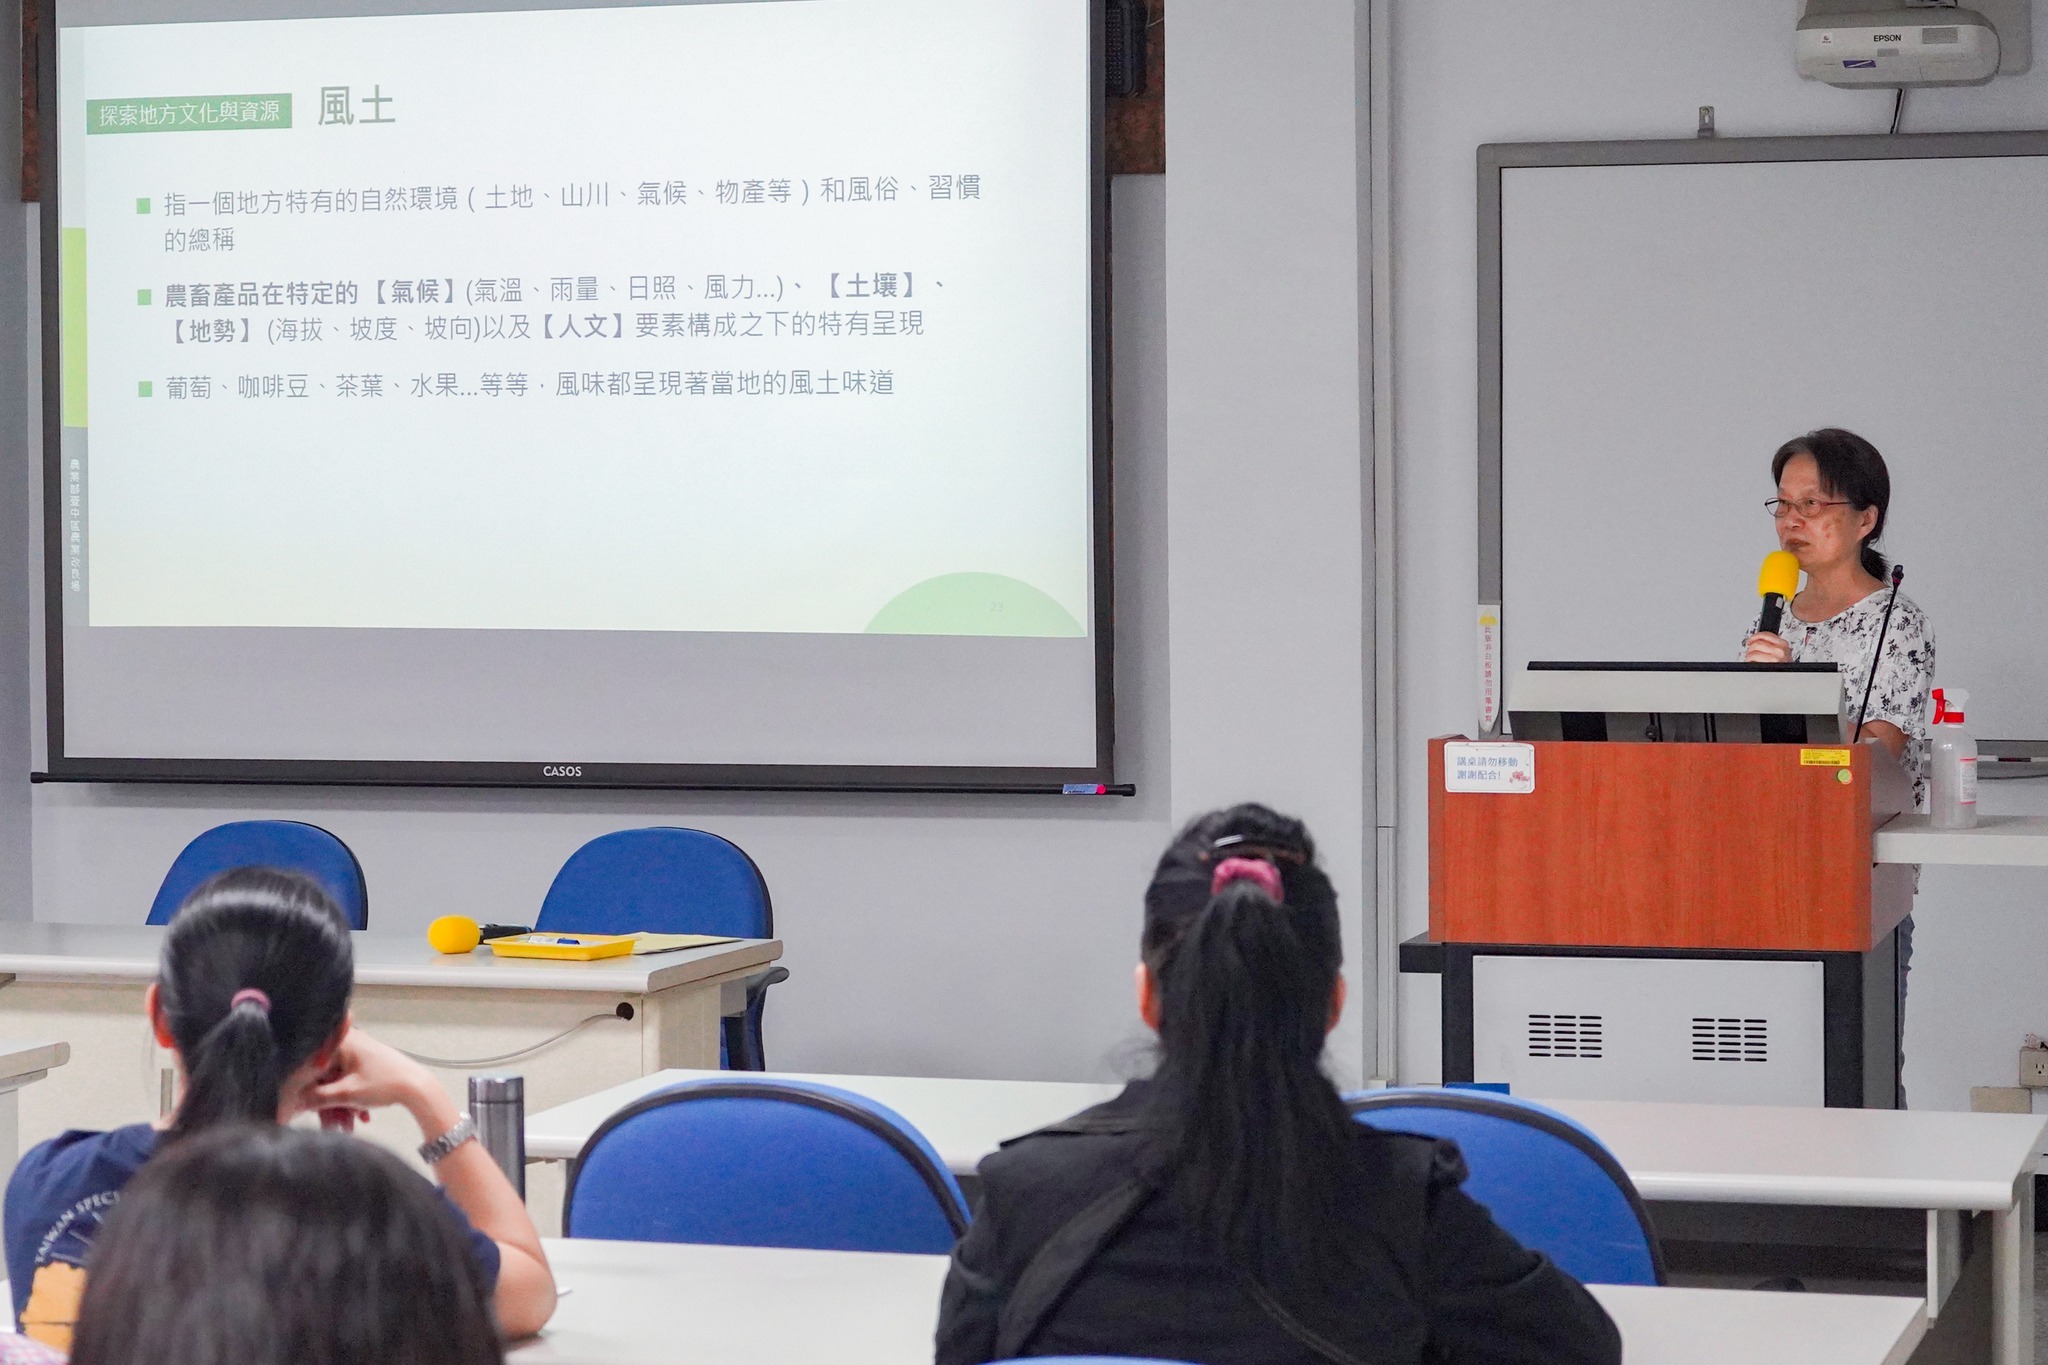 張惠真研究員講授食農教育內涵與活動設計。